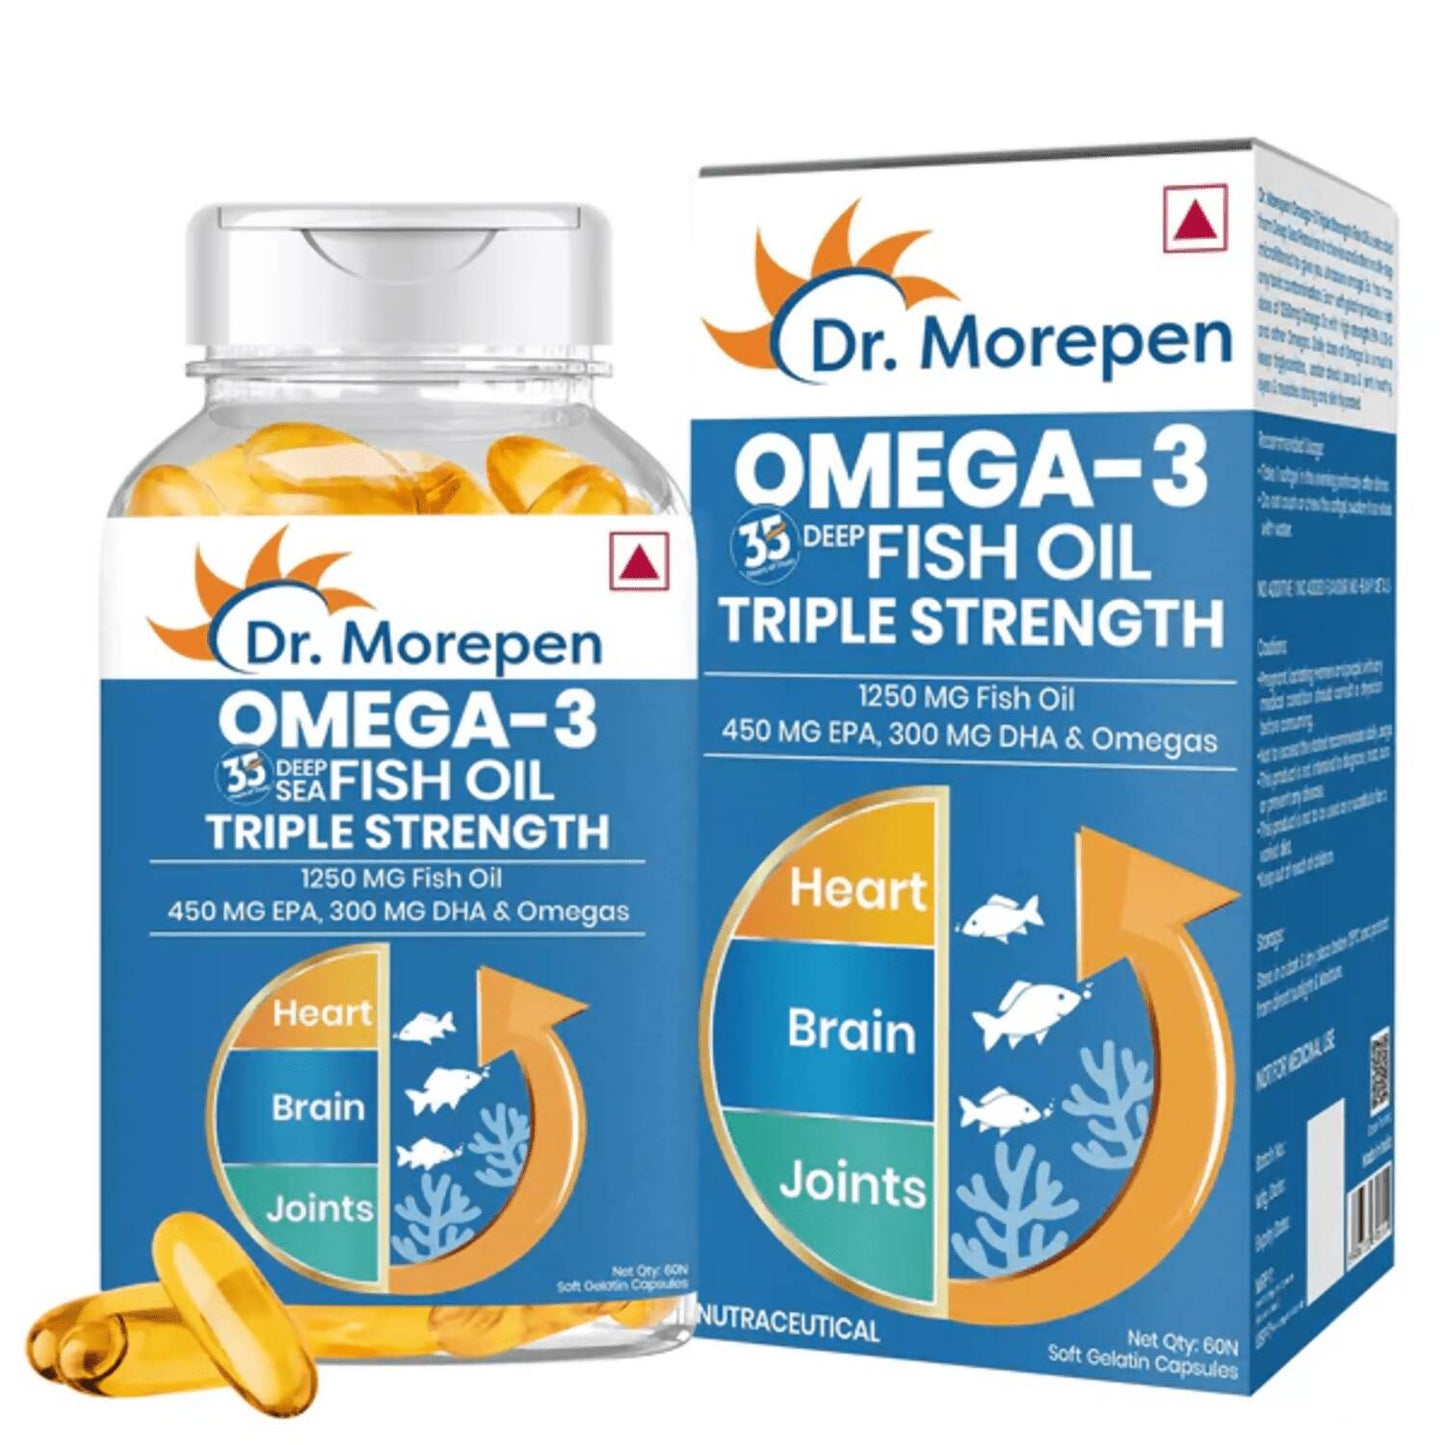 Dr. Morepen COD Liver Oil Softgels and Omega 3 Deep Sea Fish Oil Softgels Combo